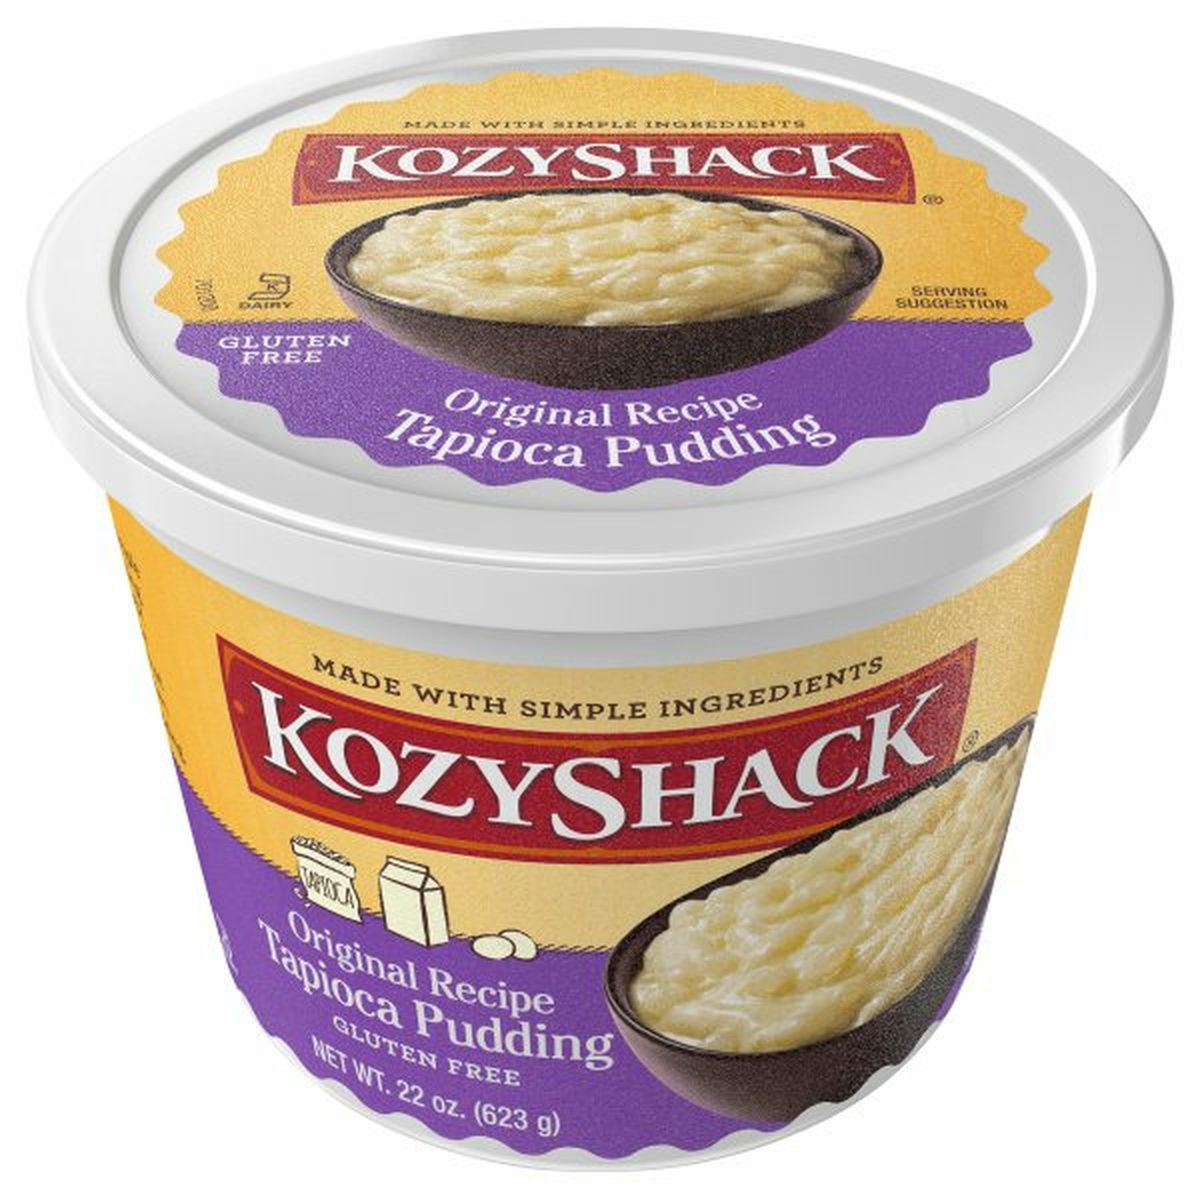 Calories in Kozy Shack Tapioca Pudding, Original Recipe